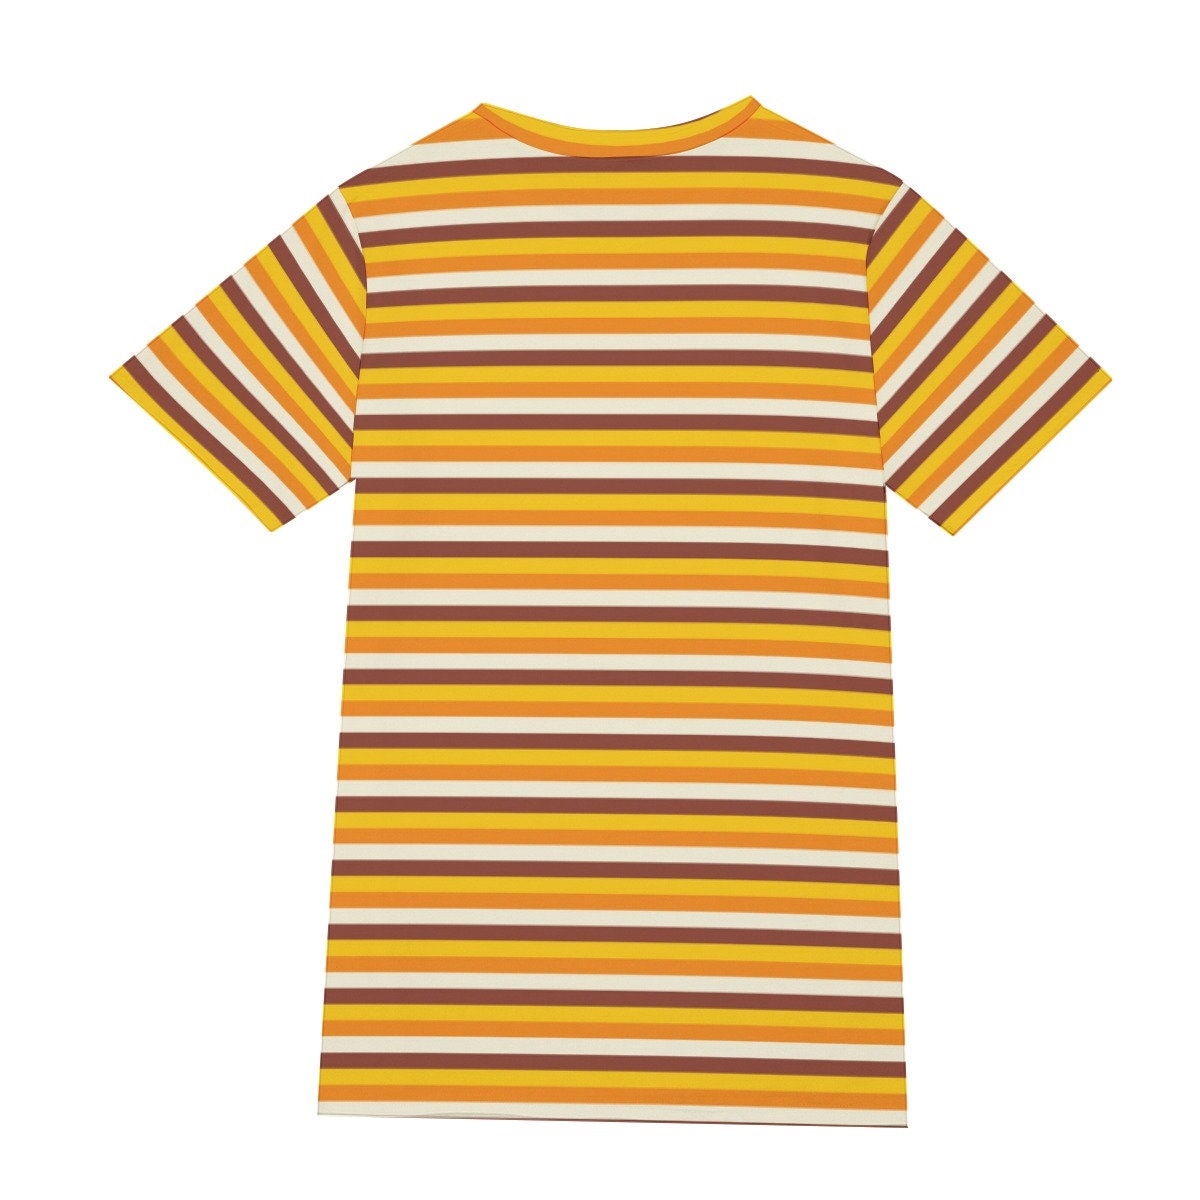 Retro T-Shirt Men, 100% Cotton T-shirt, Men&#39;s Orange Top, Men's Stripe Top, Vintage style t-shirt,70s Style T-shirt,Stripe T-shirt Men